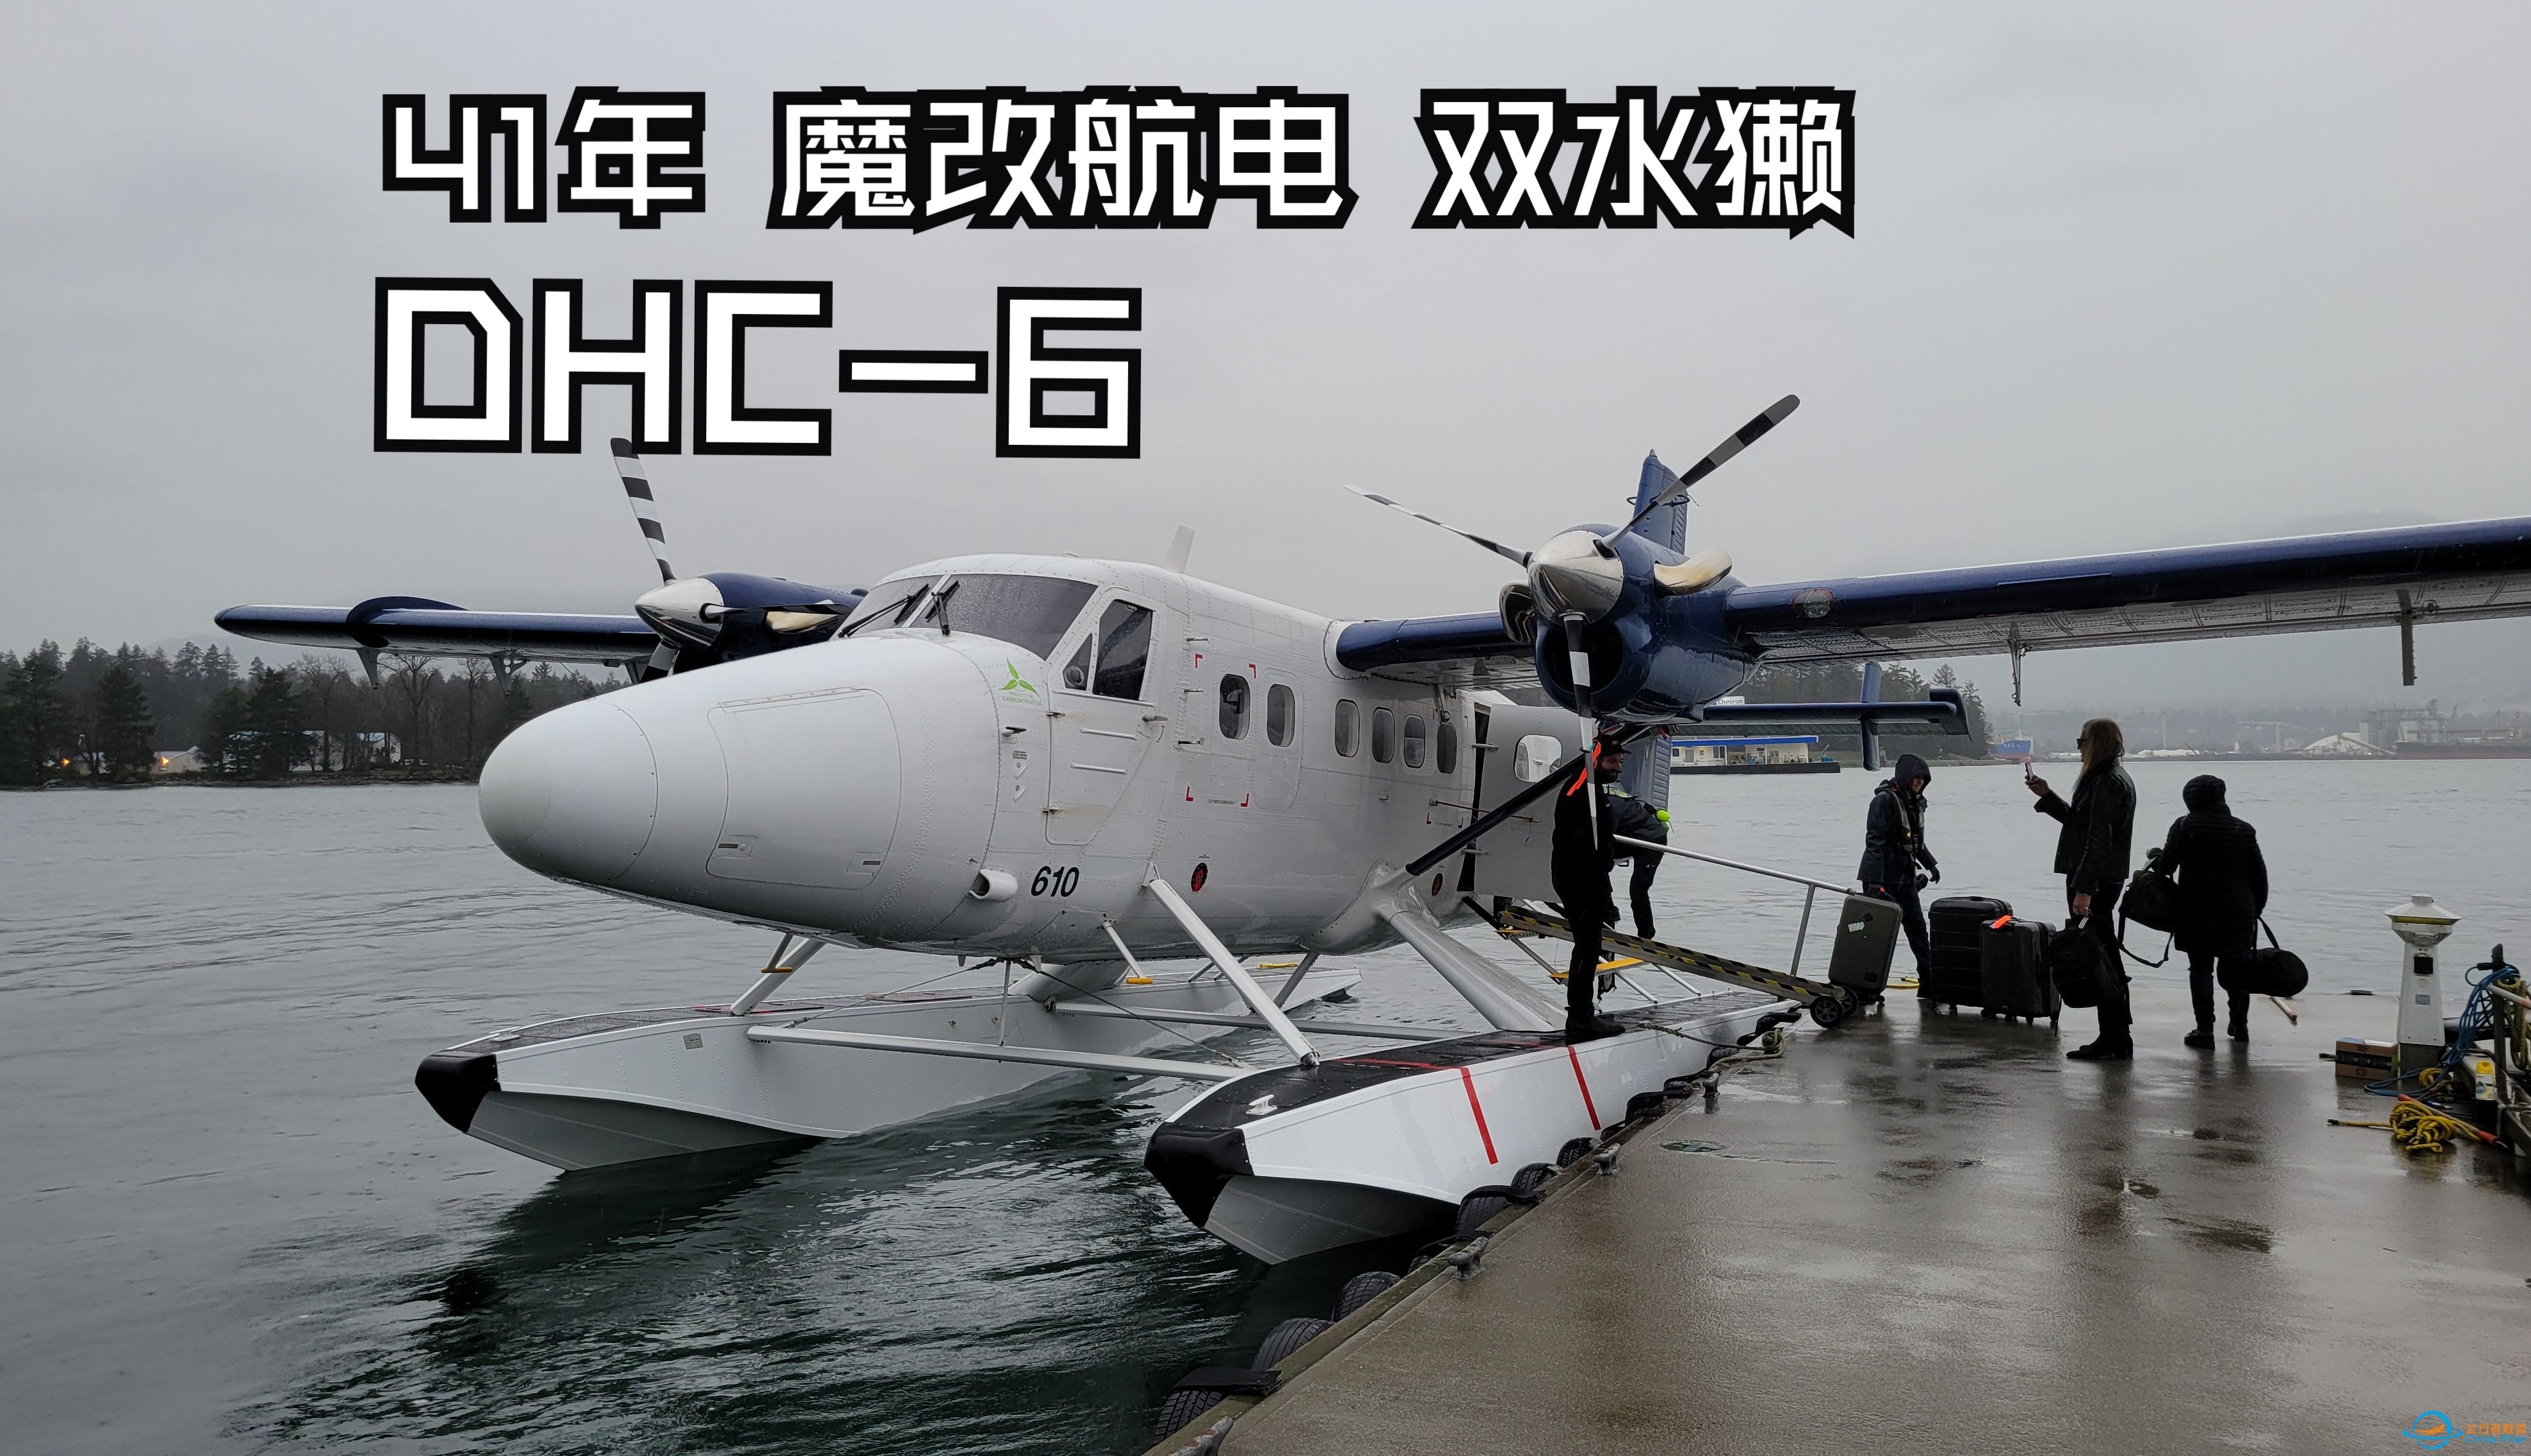 【飞行游记】41年的魔改老飞机？海港航空DHC-6双水獭水上飞机飞行体验-7668 